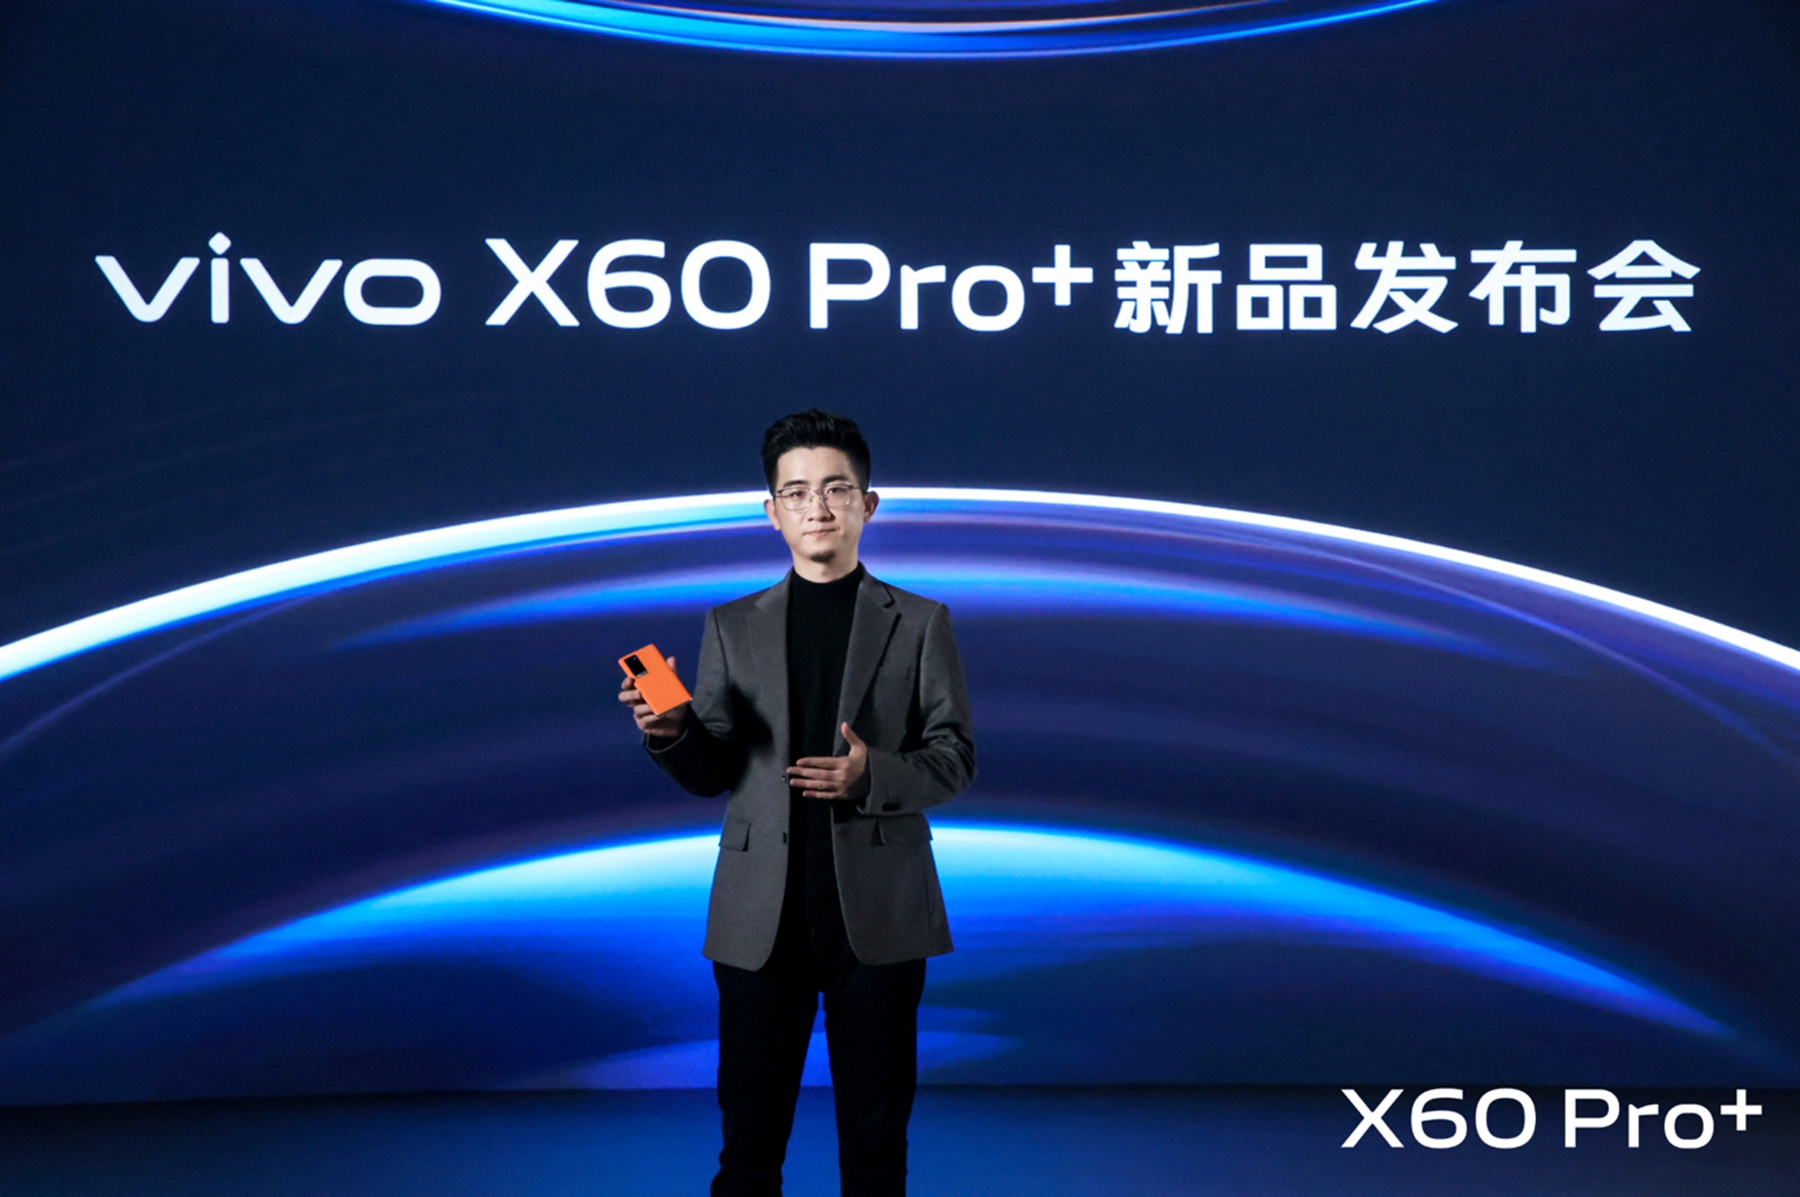 双主摄+蔡司影像系统 vivo X60 Pro+发布 4998元起